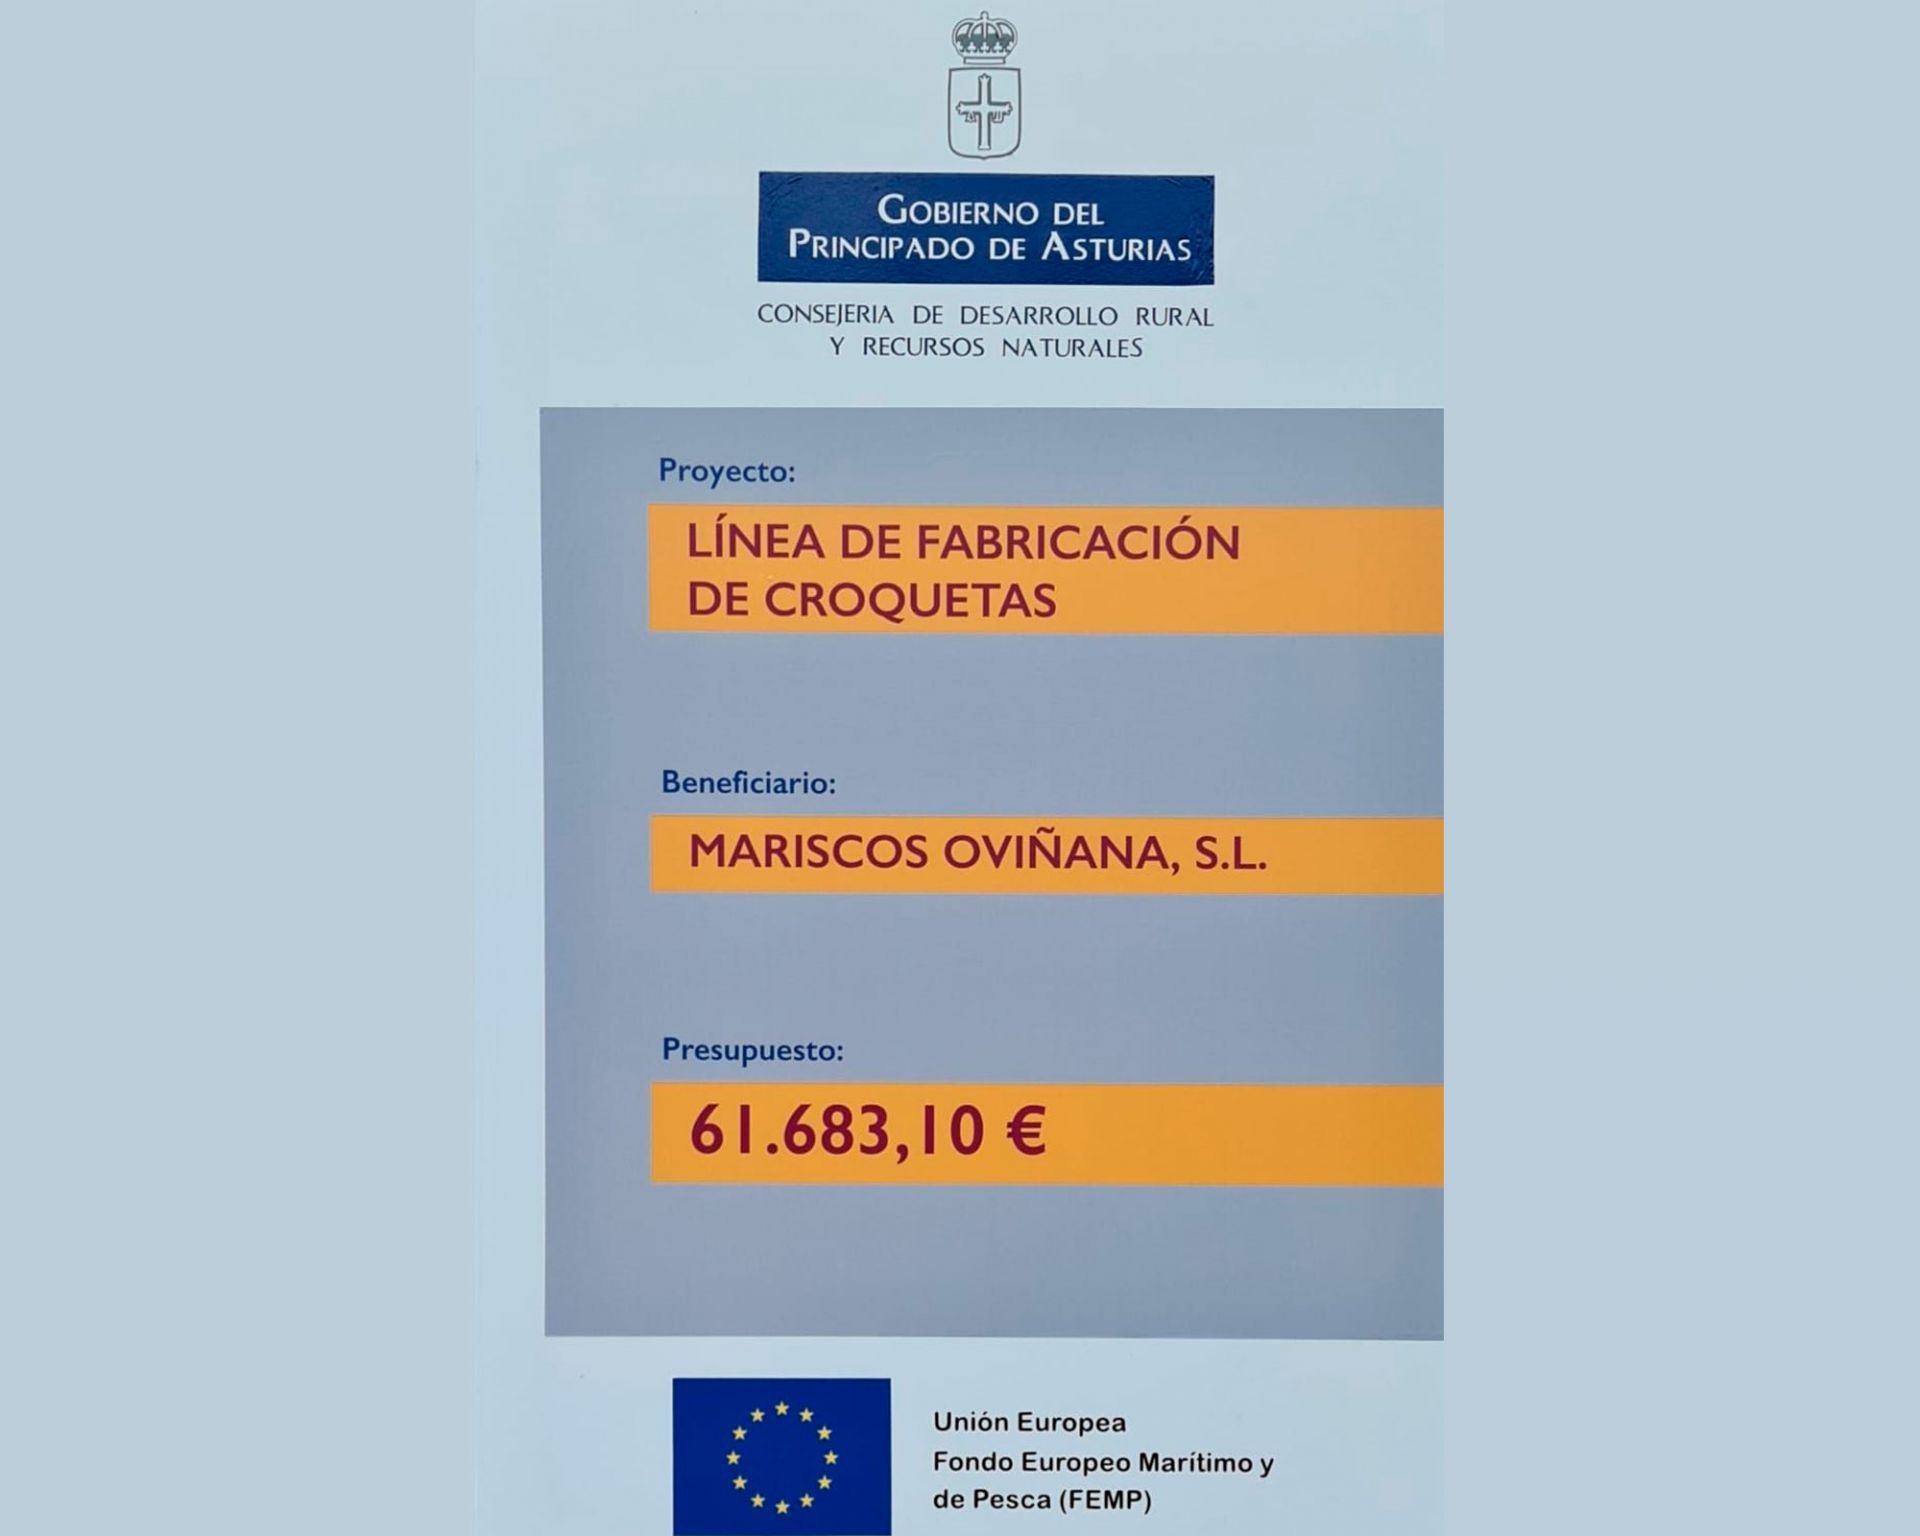 Subvención Línea fabricación de croquetas Gobierno del Principado de Asturias